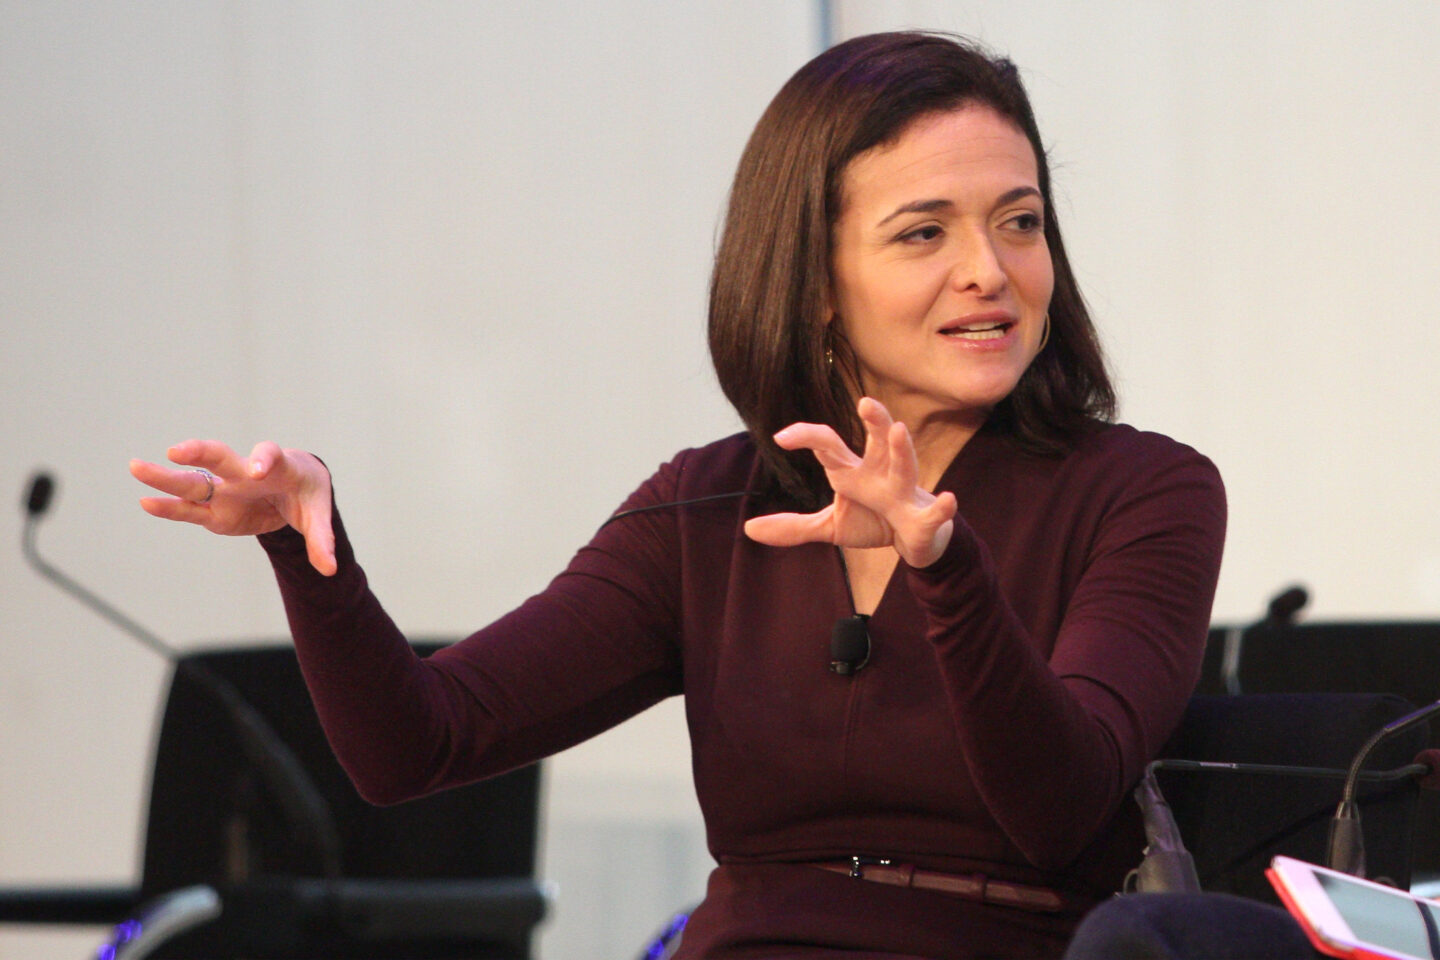 Sheryl Sandberg: kobieta, która stworzyła potęgę Google i Facebooka (cz. 1) [PODCAST]